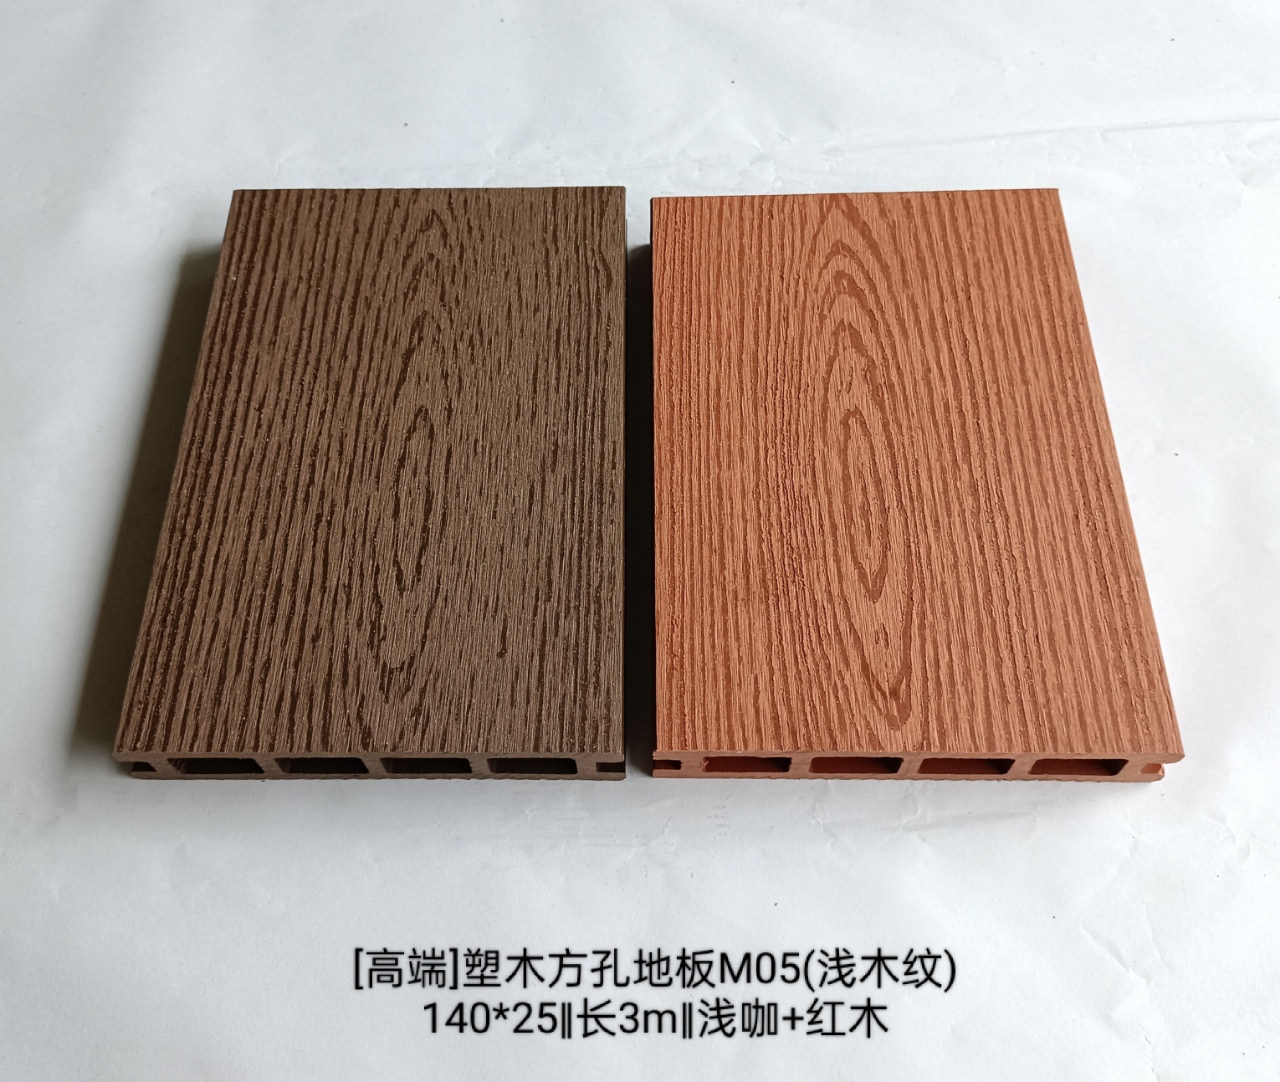 3.品名:塑木方孔地板M05 型号: ADB140F25M05 规格:140*25*3000